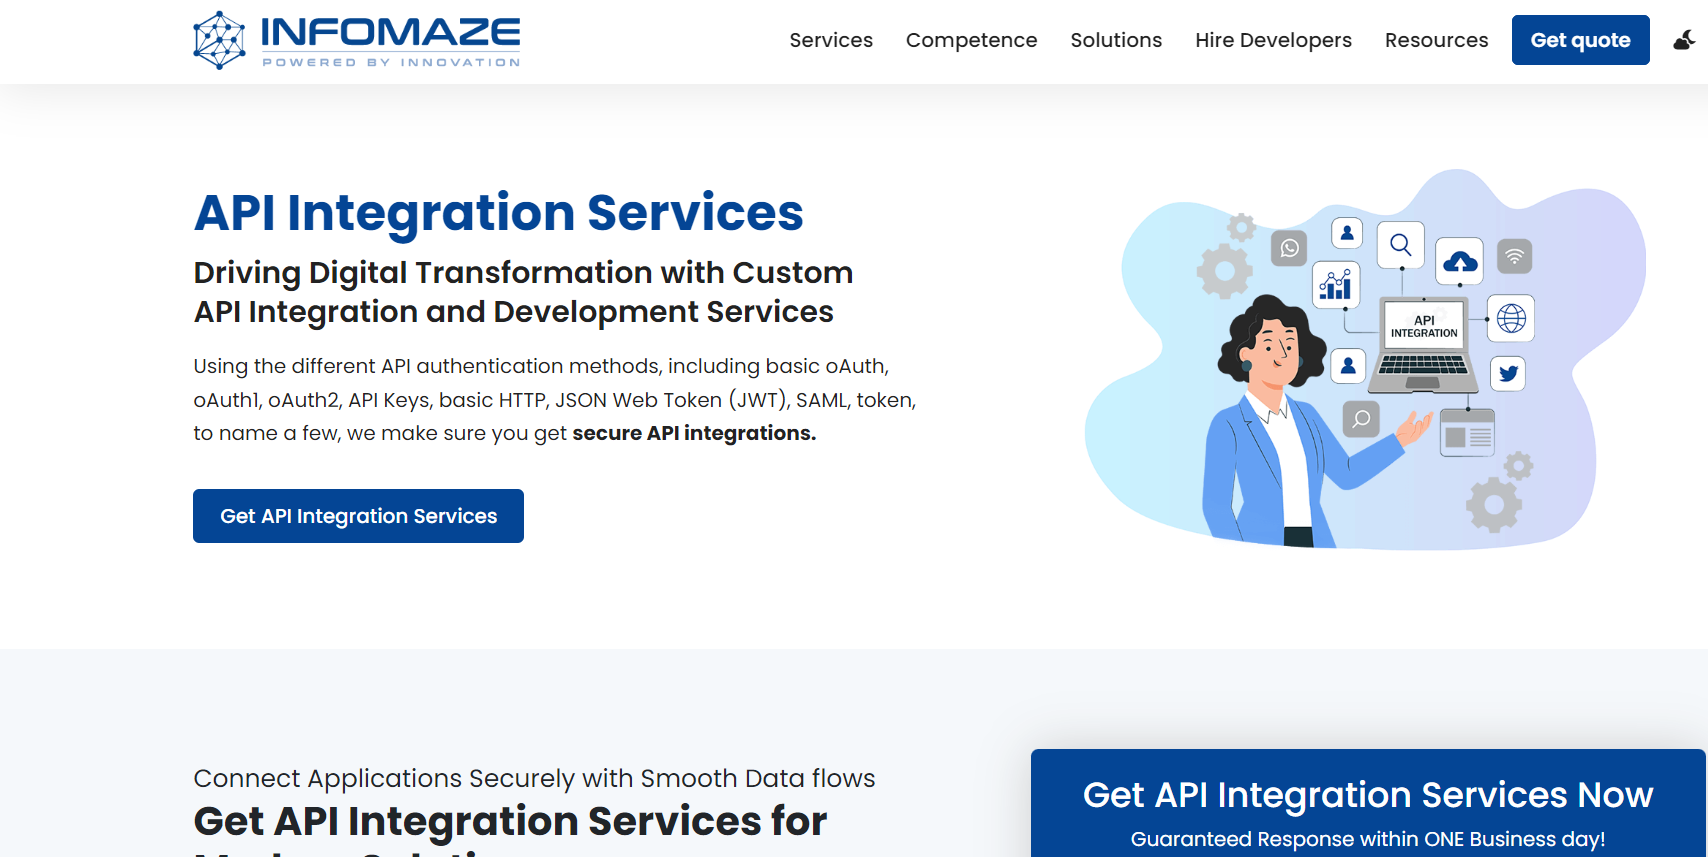 Infomaze API Integration Services